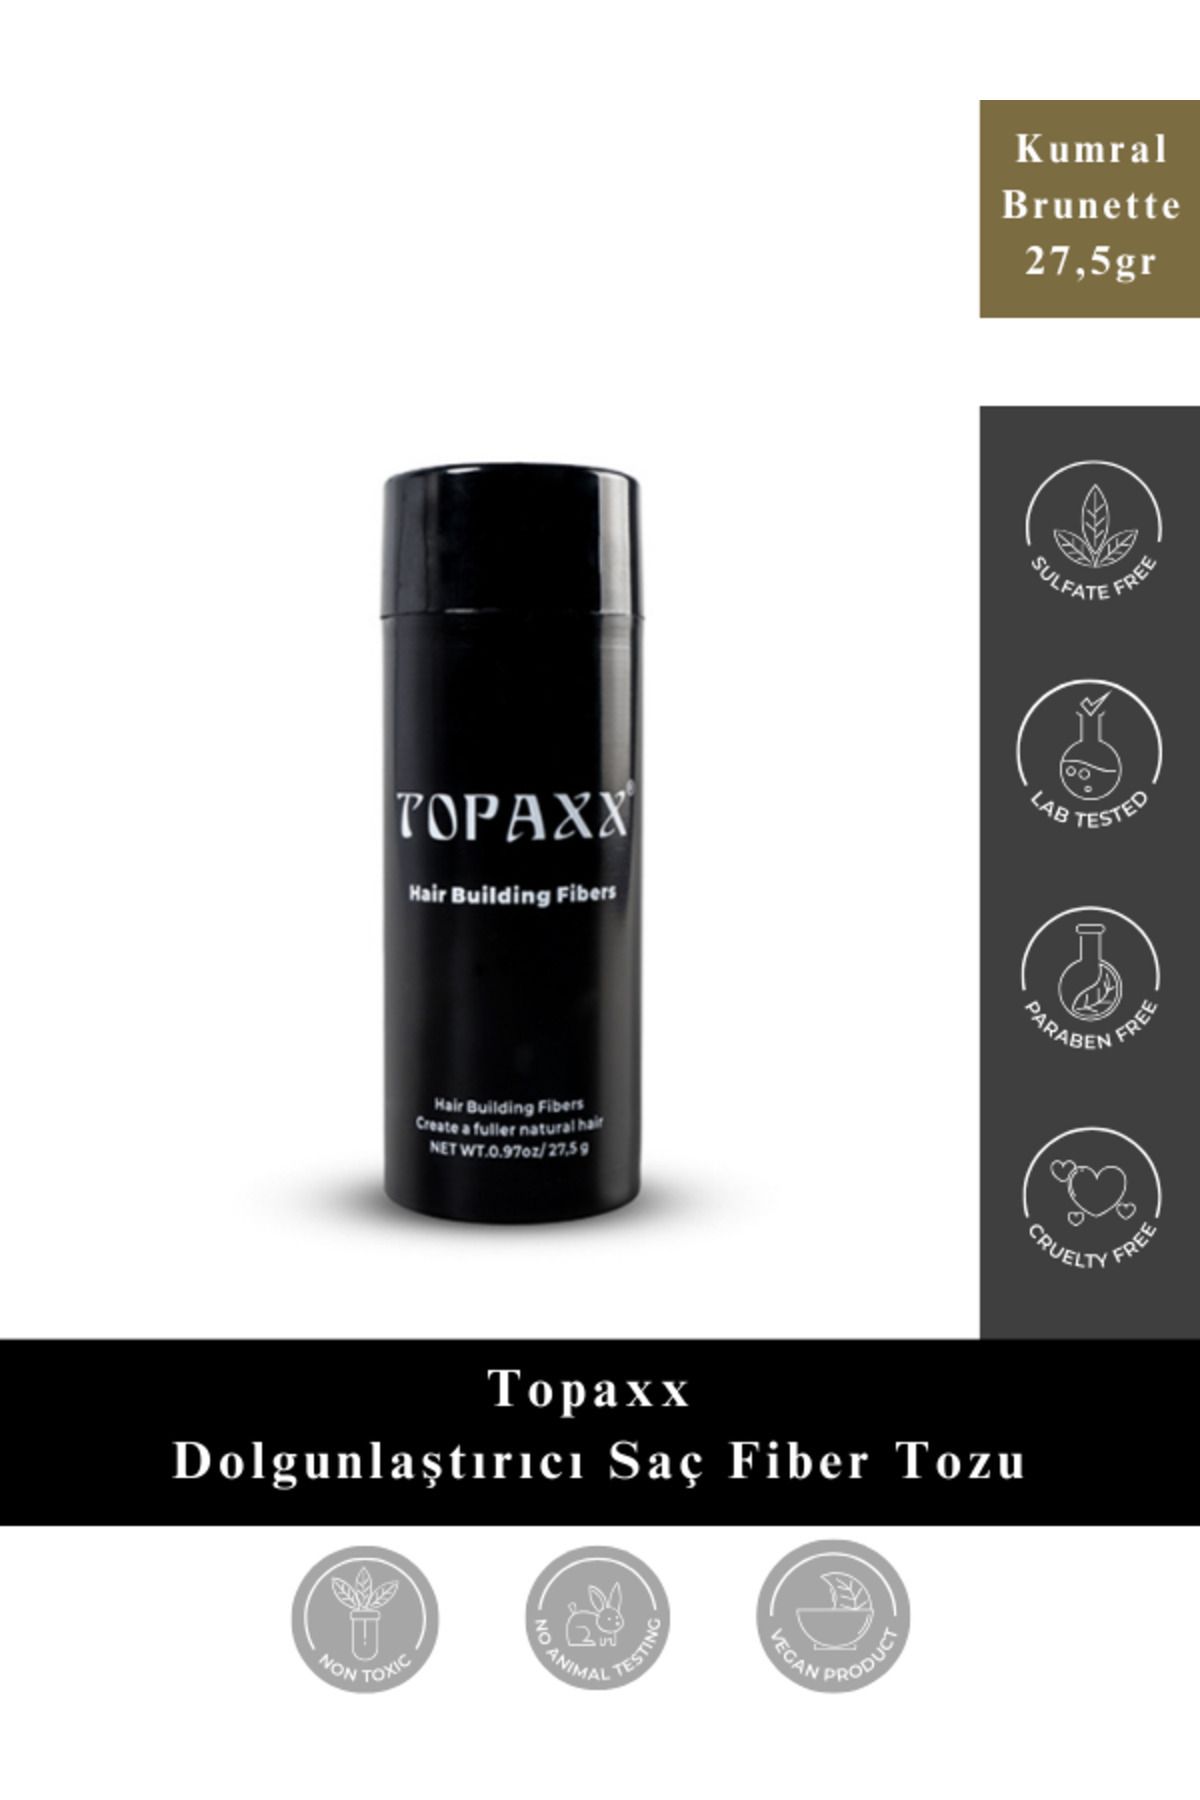 Topaxx Kumral/ Brunette Kellik Kapatıcı Dolgunlaştırıcı Saç Fiber Tozu 27,5 gr